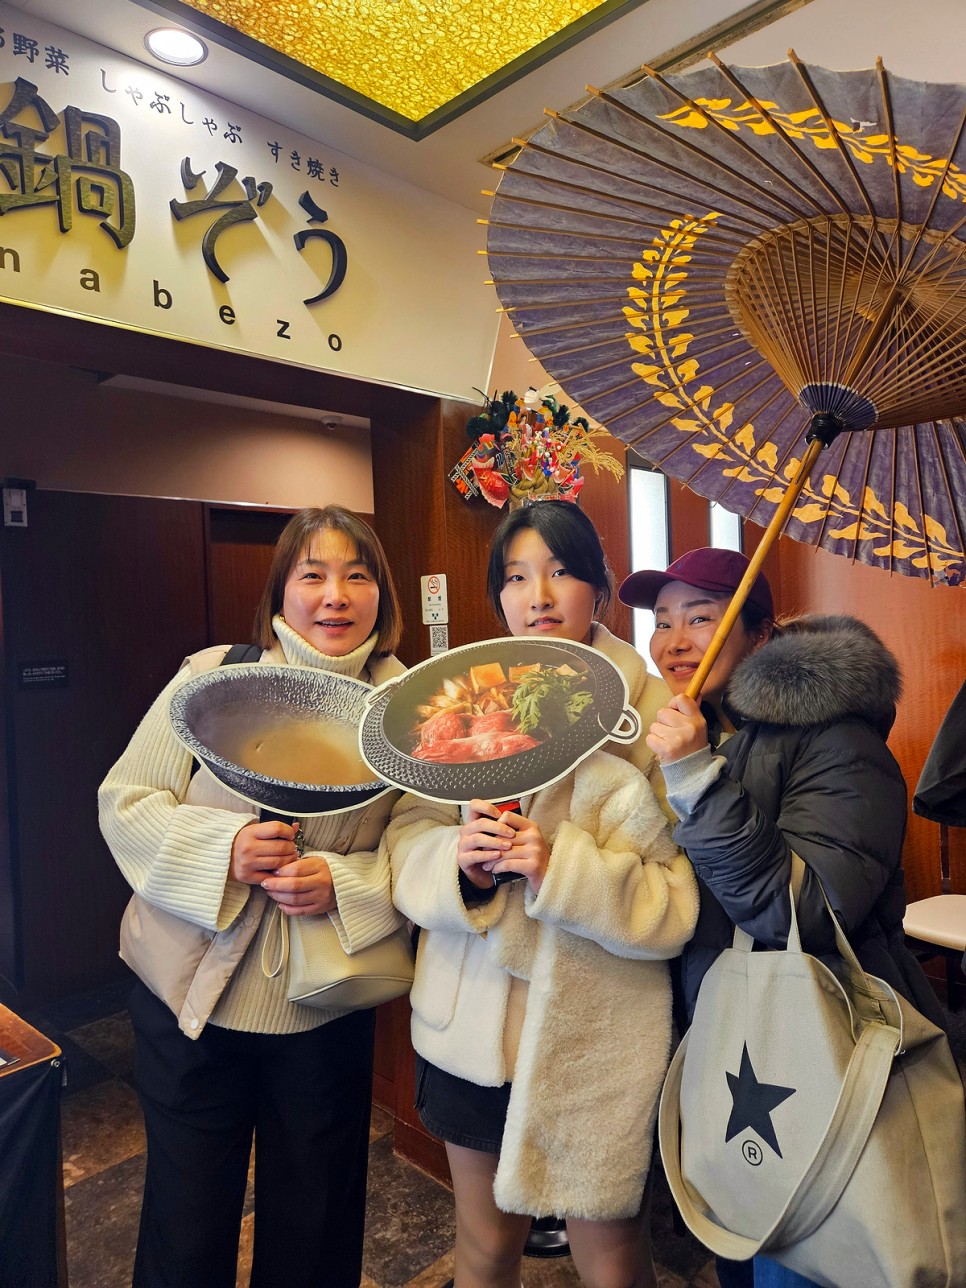 도쿄 아사쿠사 맛집 나베조(NABEZO) 아사쿠사 카미나리몬점 스키야키(스끼야끼) 제대로 즐김